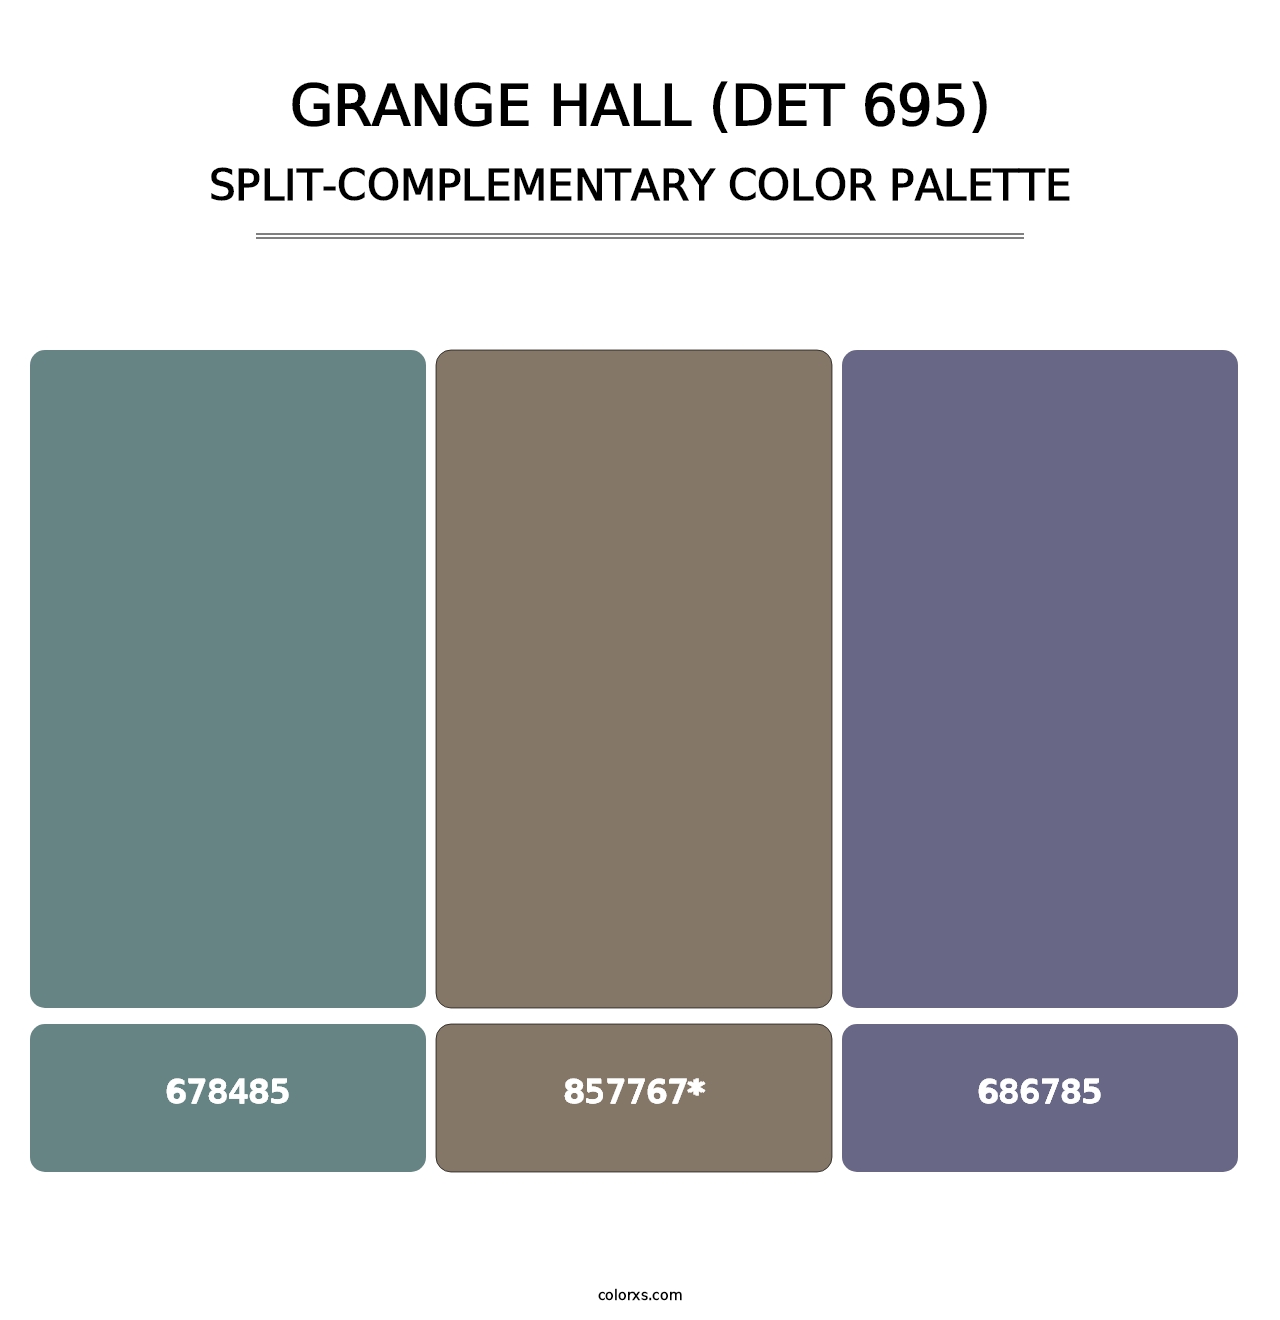 Grange Hall (DET 695) - Split-Complementary Color Palette